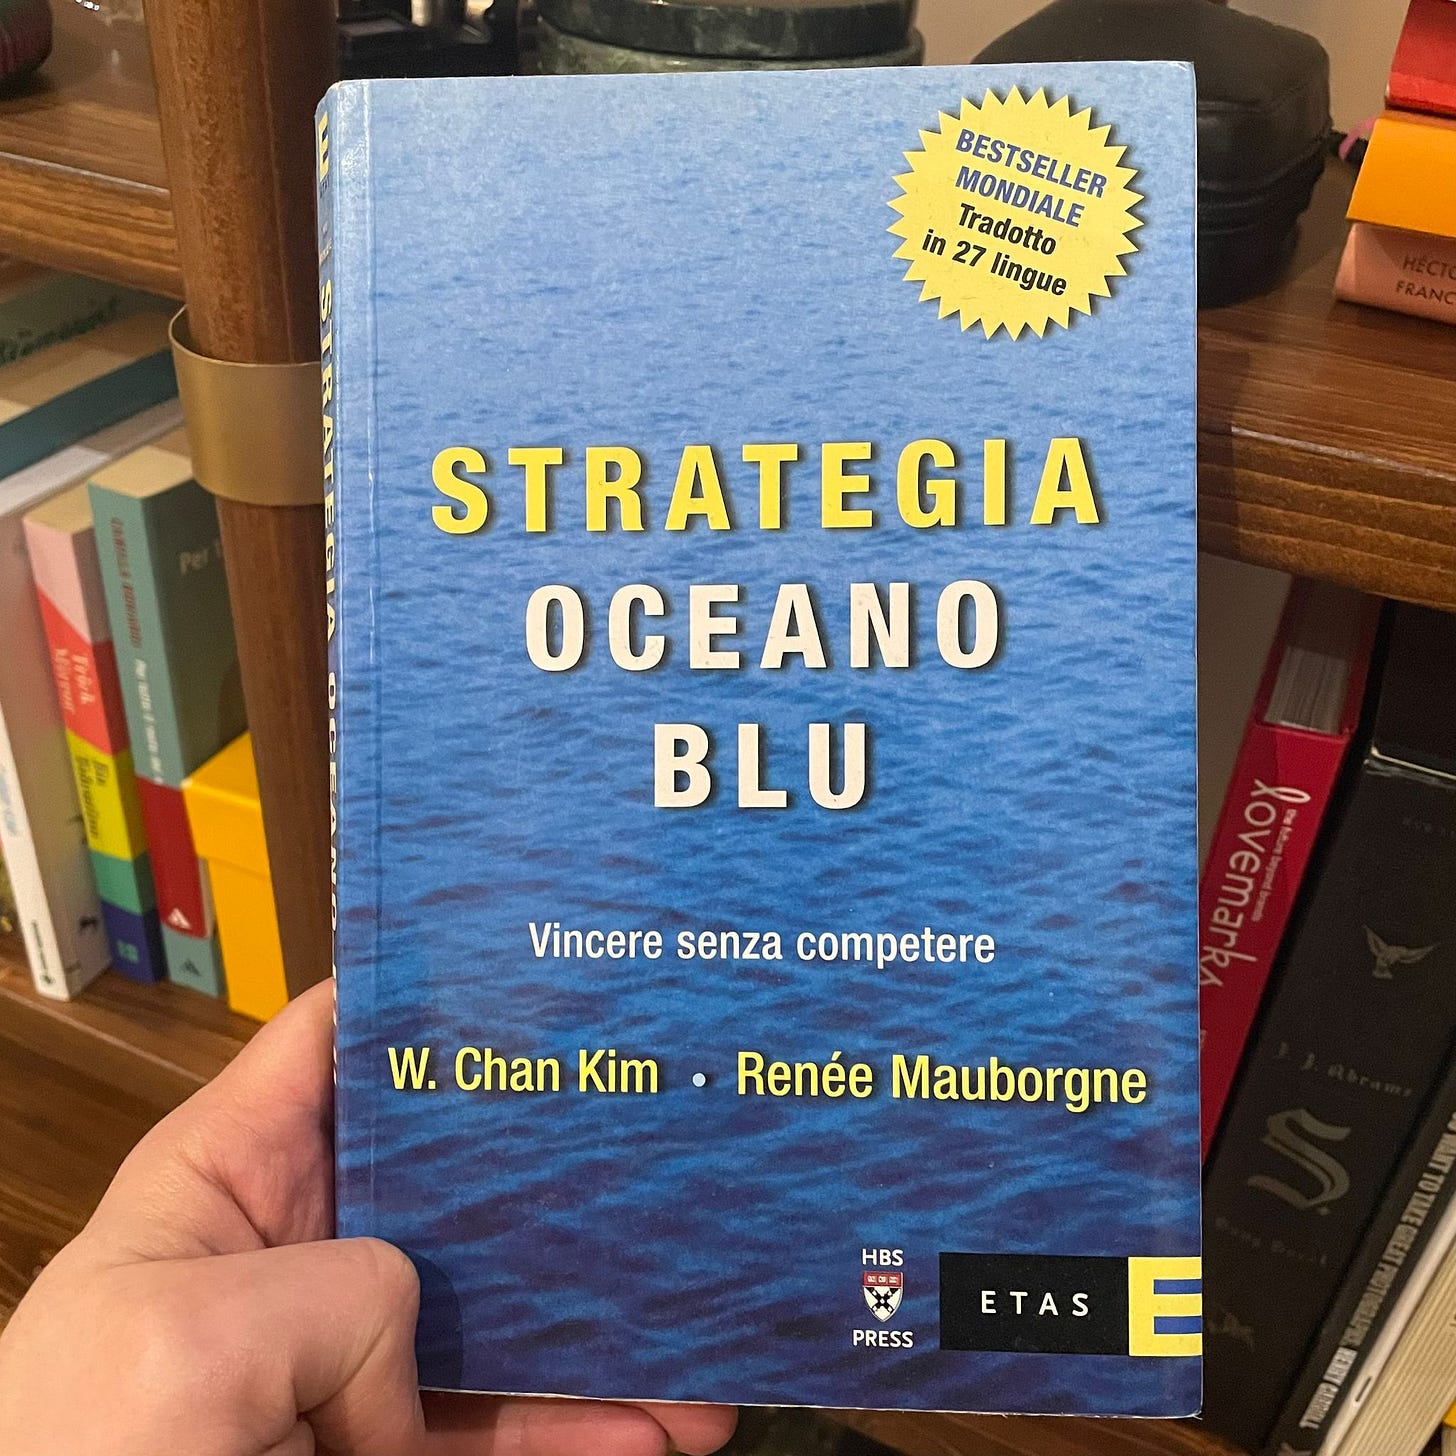 La strategia Oceano Blu